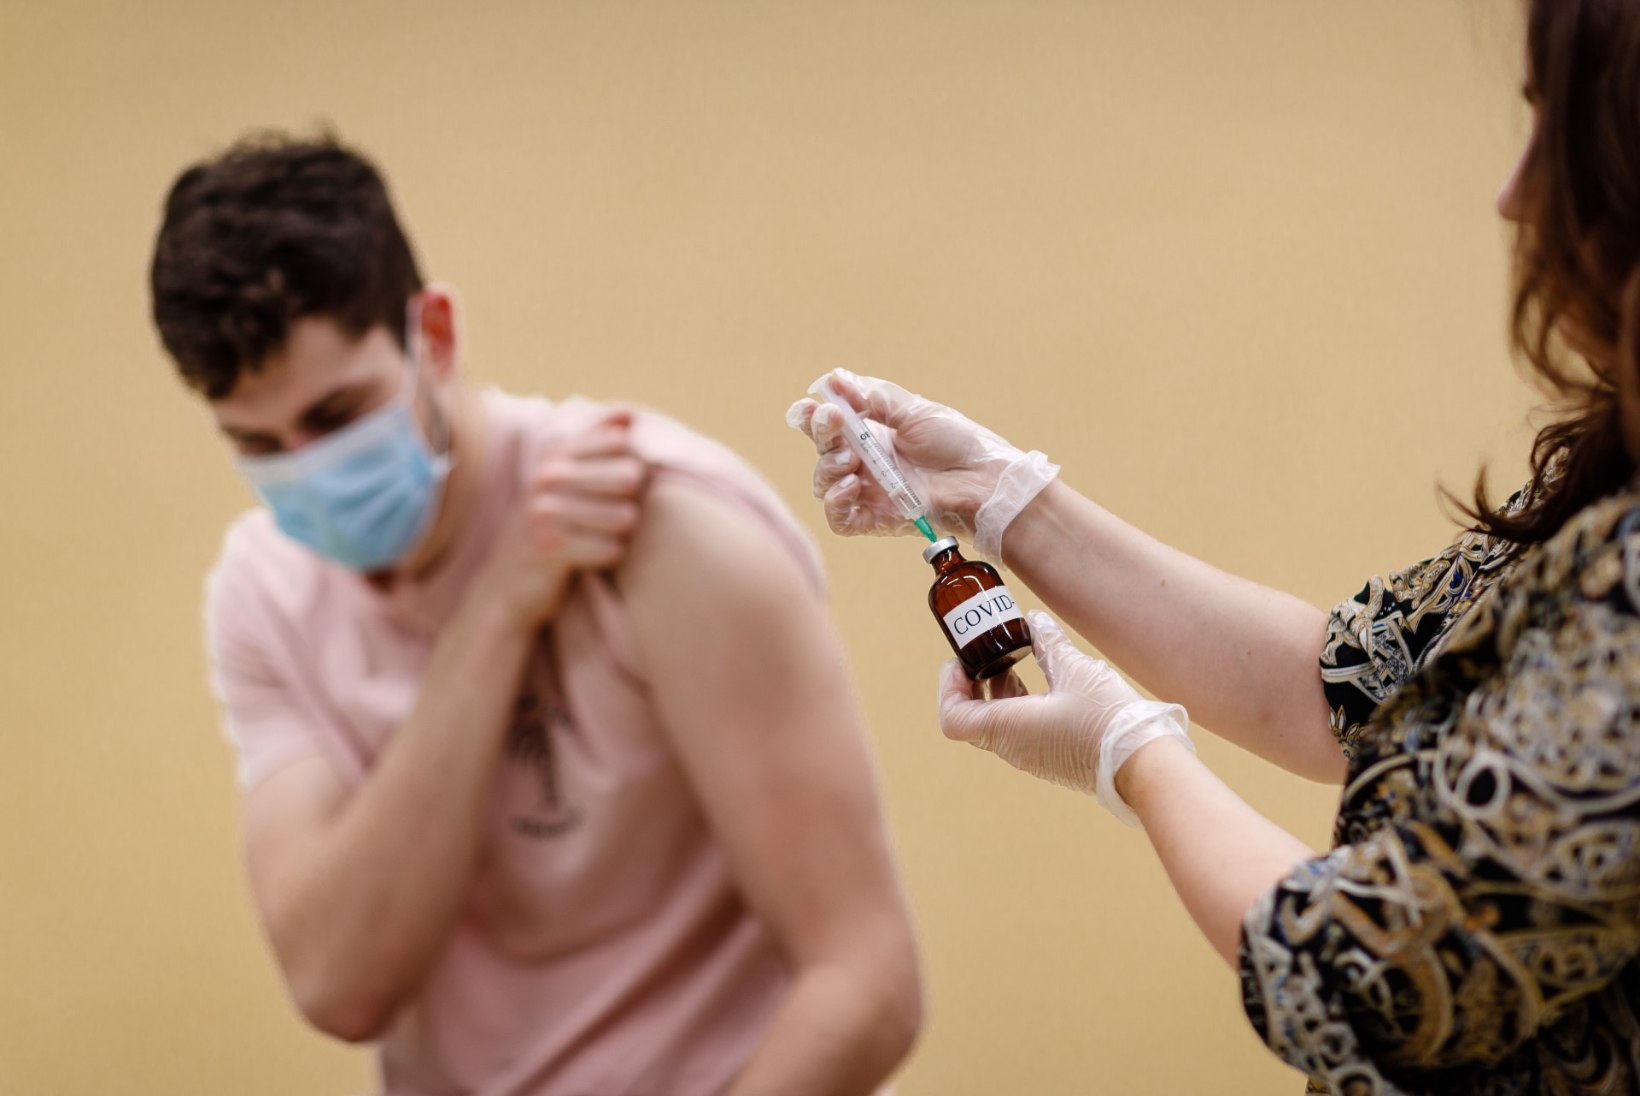 Eesti valmistub alustama koroonaviiruse vastu vaktsineerimisega